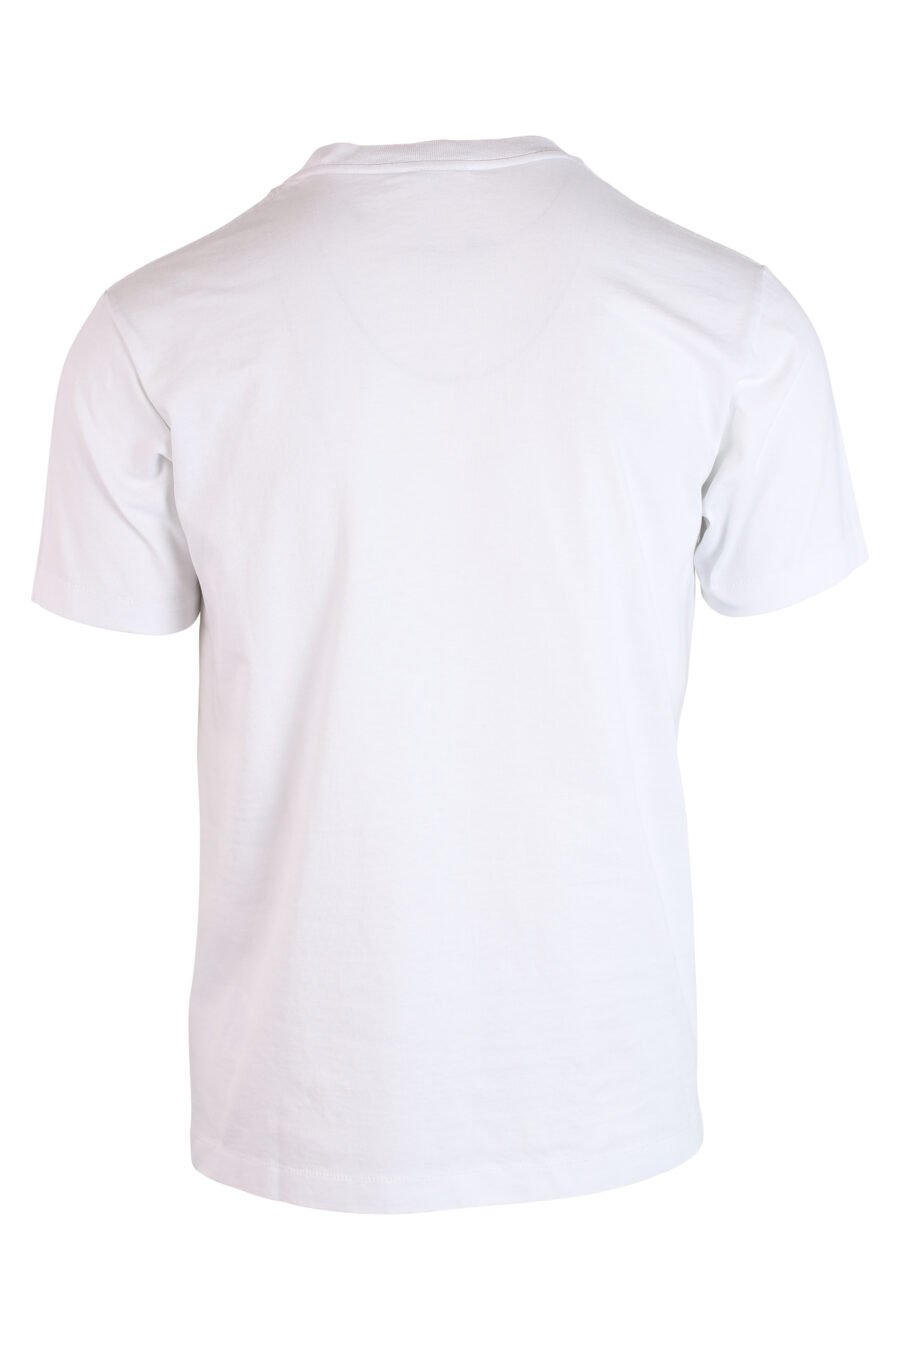 Camiseta blanca con maxilogo "paris classic" verde - IMG 3261